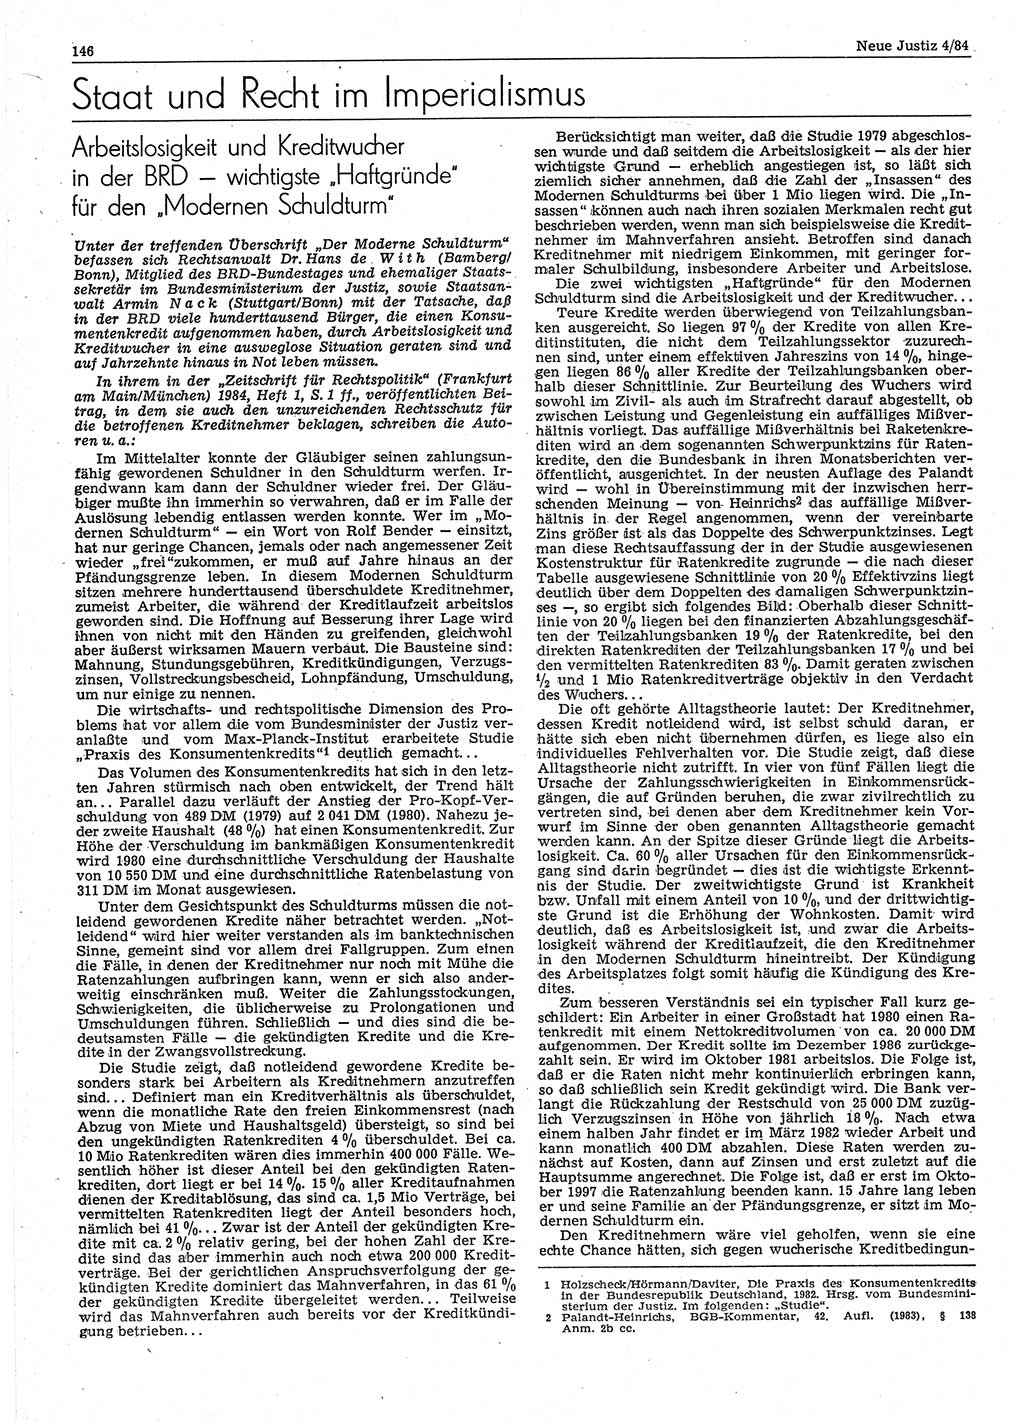 Neue Justiz (NJ), Zeitschrift für sozialistisches Recht und Gesetzlichkeit [Deutsche Demokratische Republik (DDR)], 38. Jahrgang 1984, Seite 146 (NJ DDR 1984, S. 146)